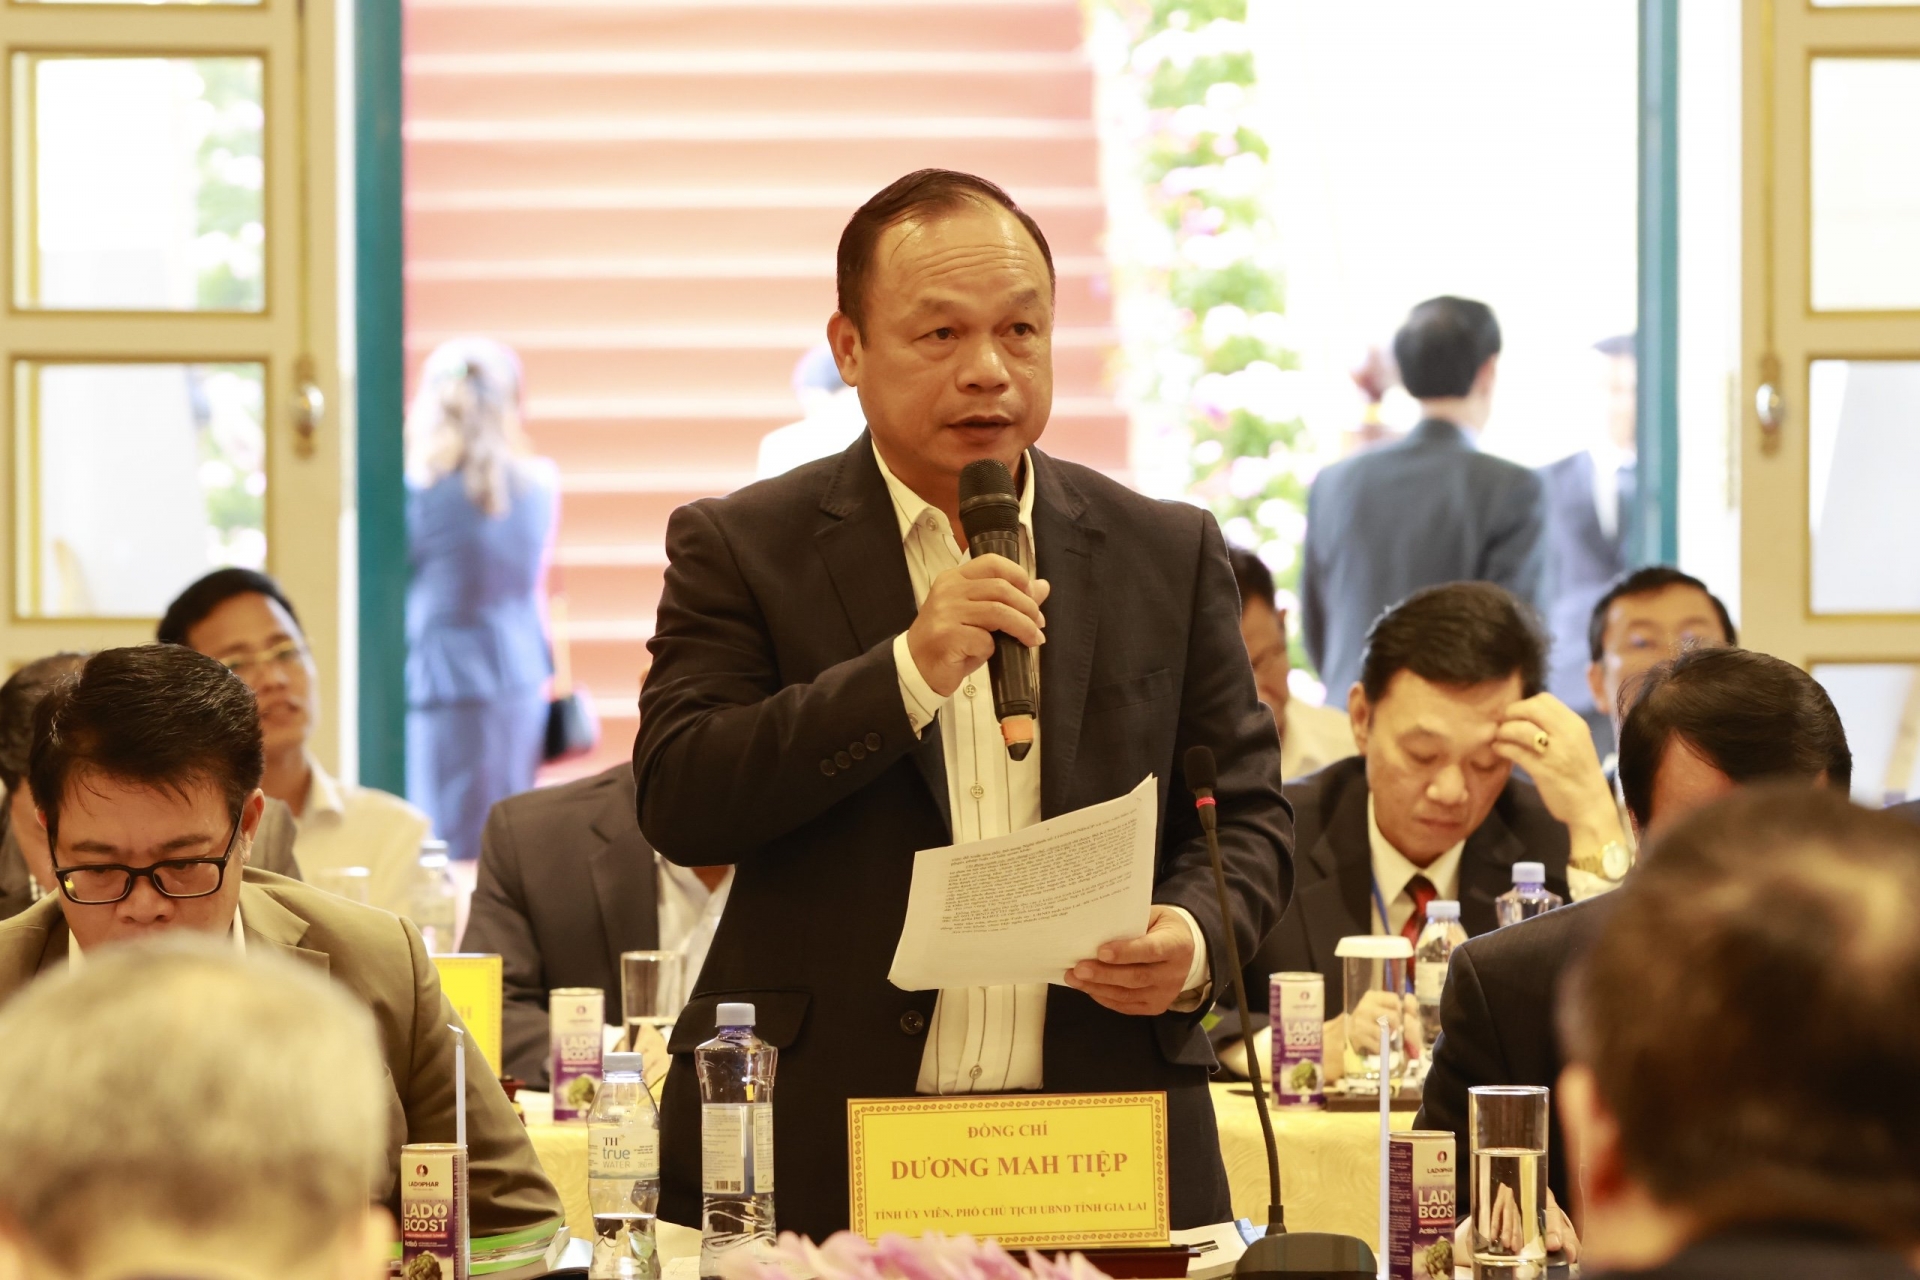 Phó Chủ tịch UBND tỉnh Gia Lai Dương Mah Tiệp báo cáo tại Hội nghị